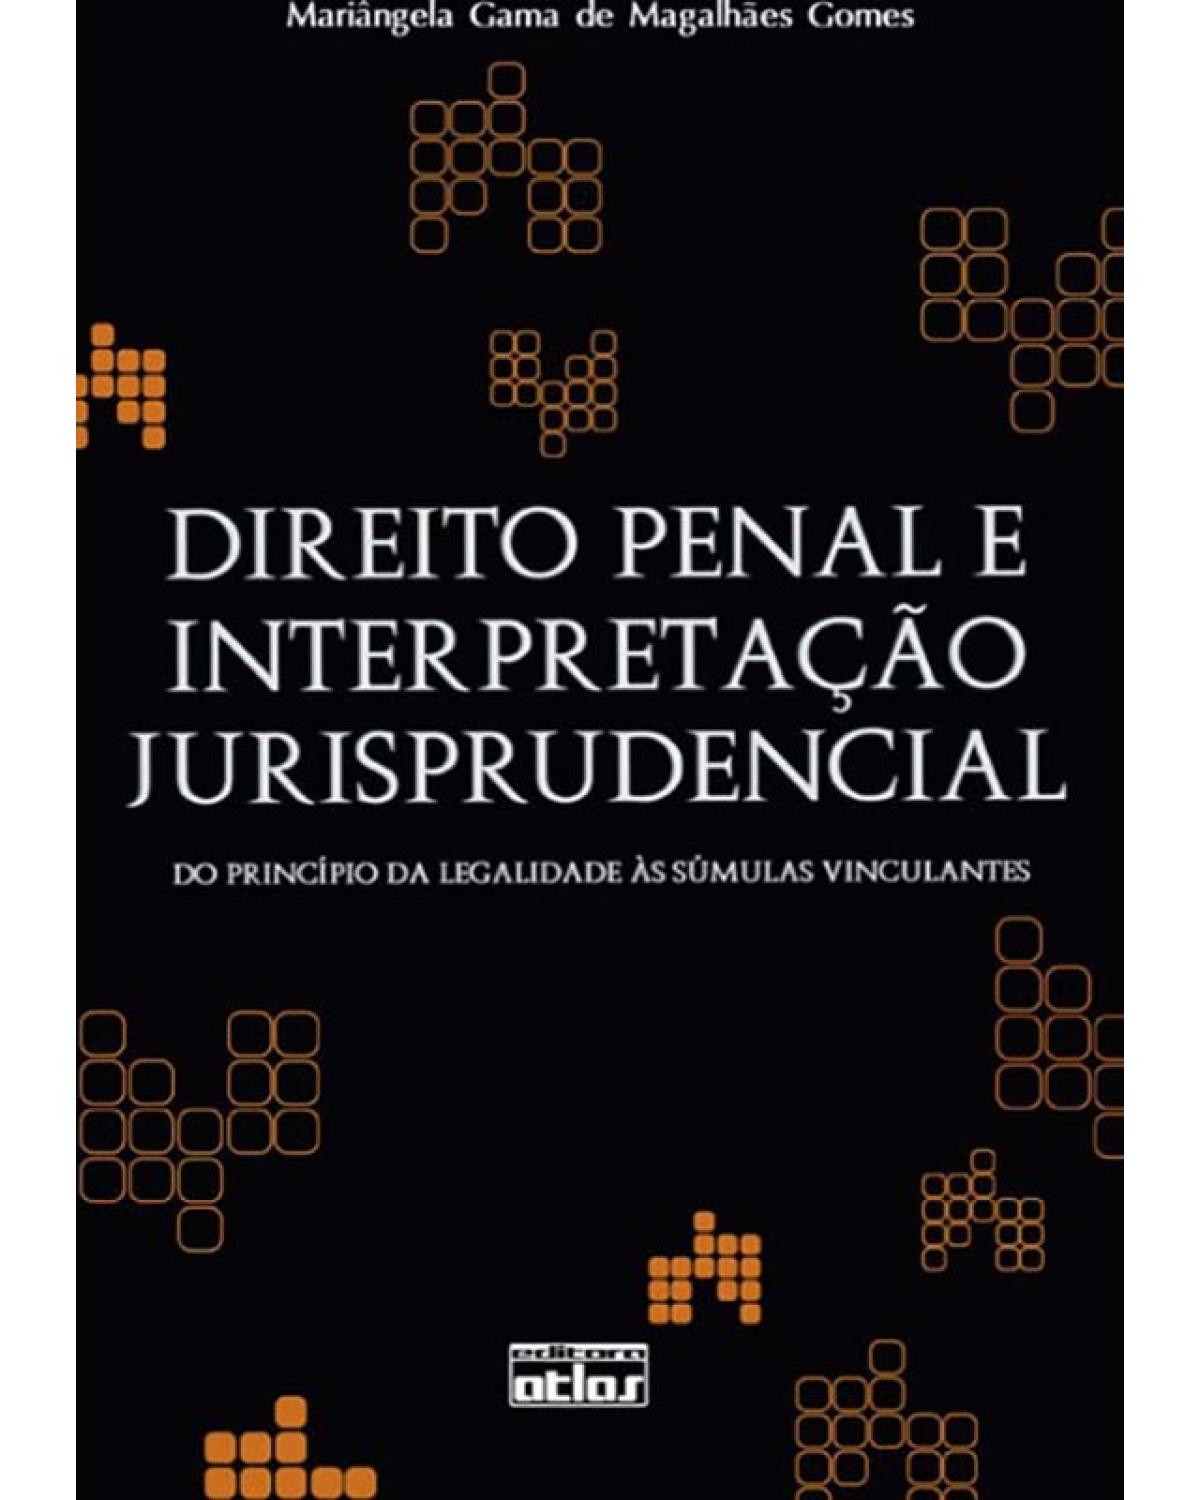 Direito penal e interpretação jurisprudencial - Do princípio da legalidade às súmulas vinculantes - 1ª Edição | 2008